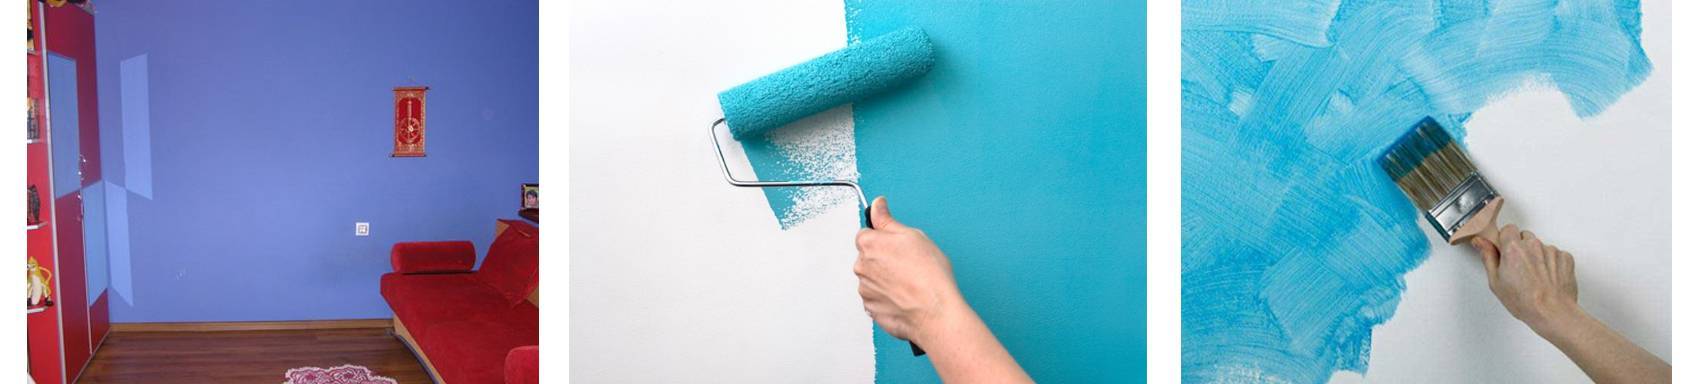 Как поклеить обои на крашеную стену: можно ли наклеить на окрашенные стены, какие лучше выбрать обои и клей, а какие материалы не стоит использовать